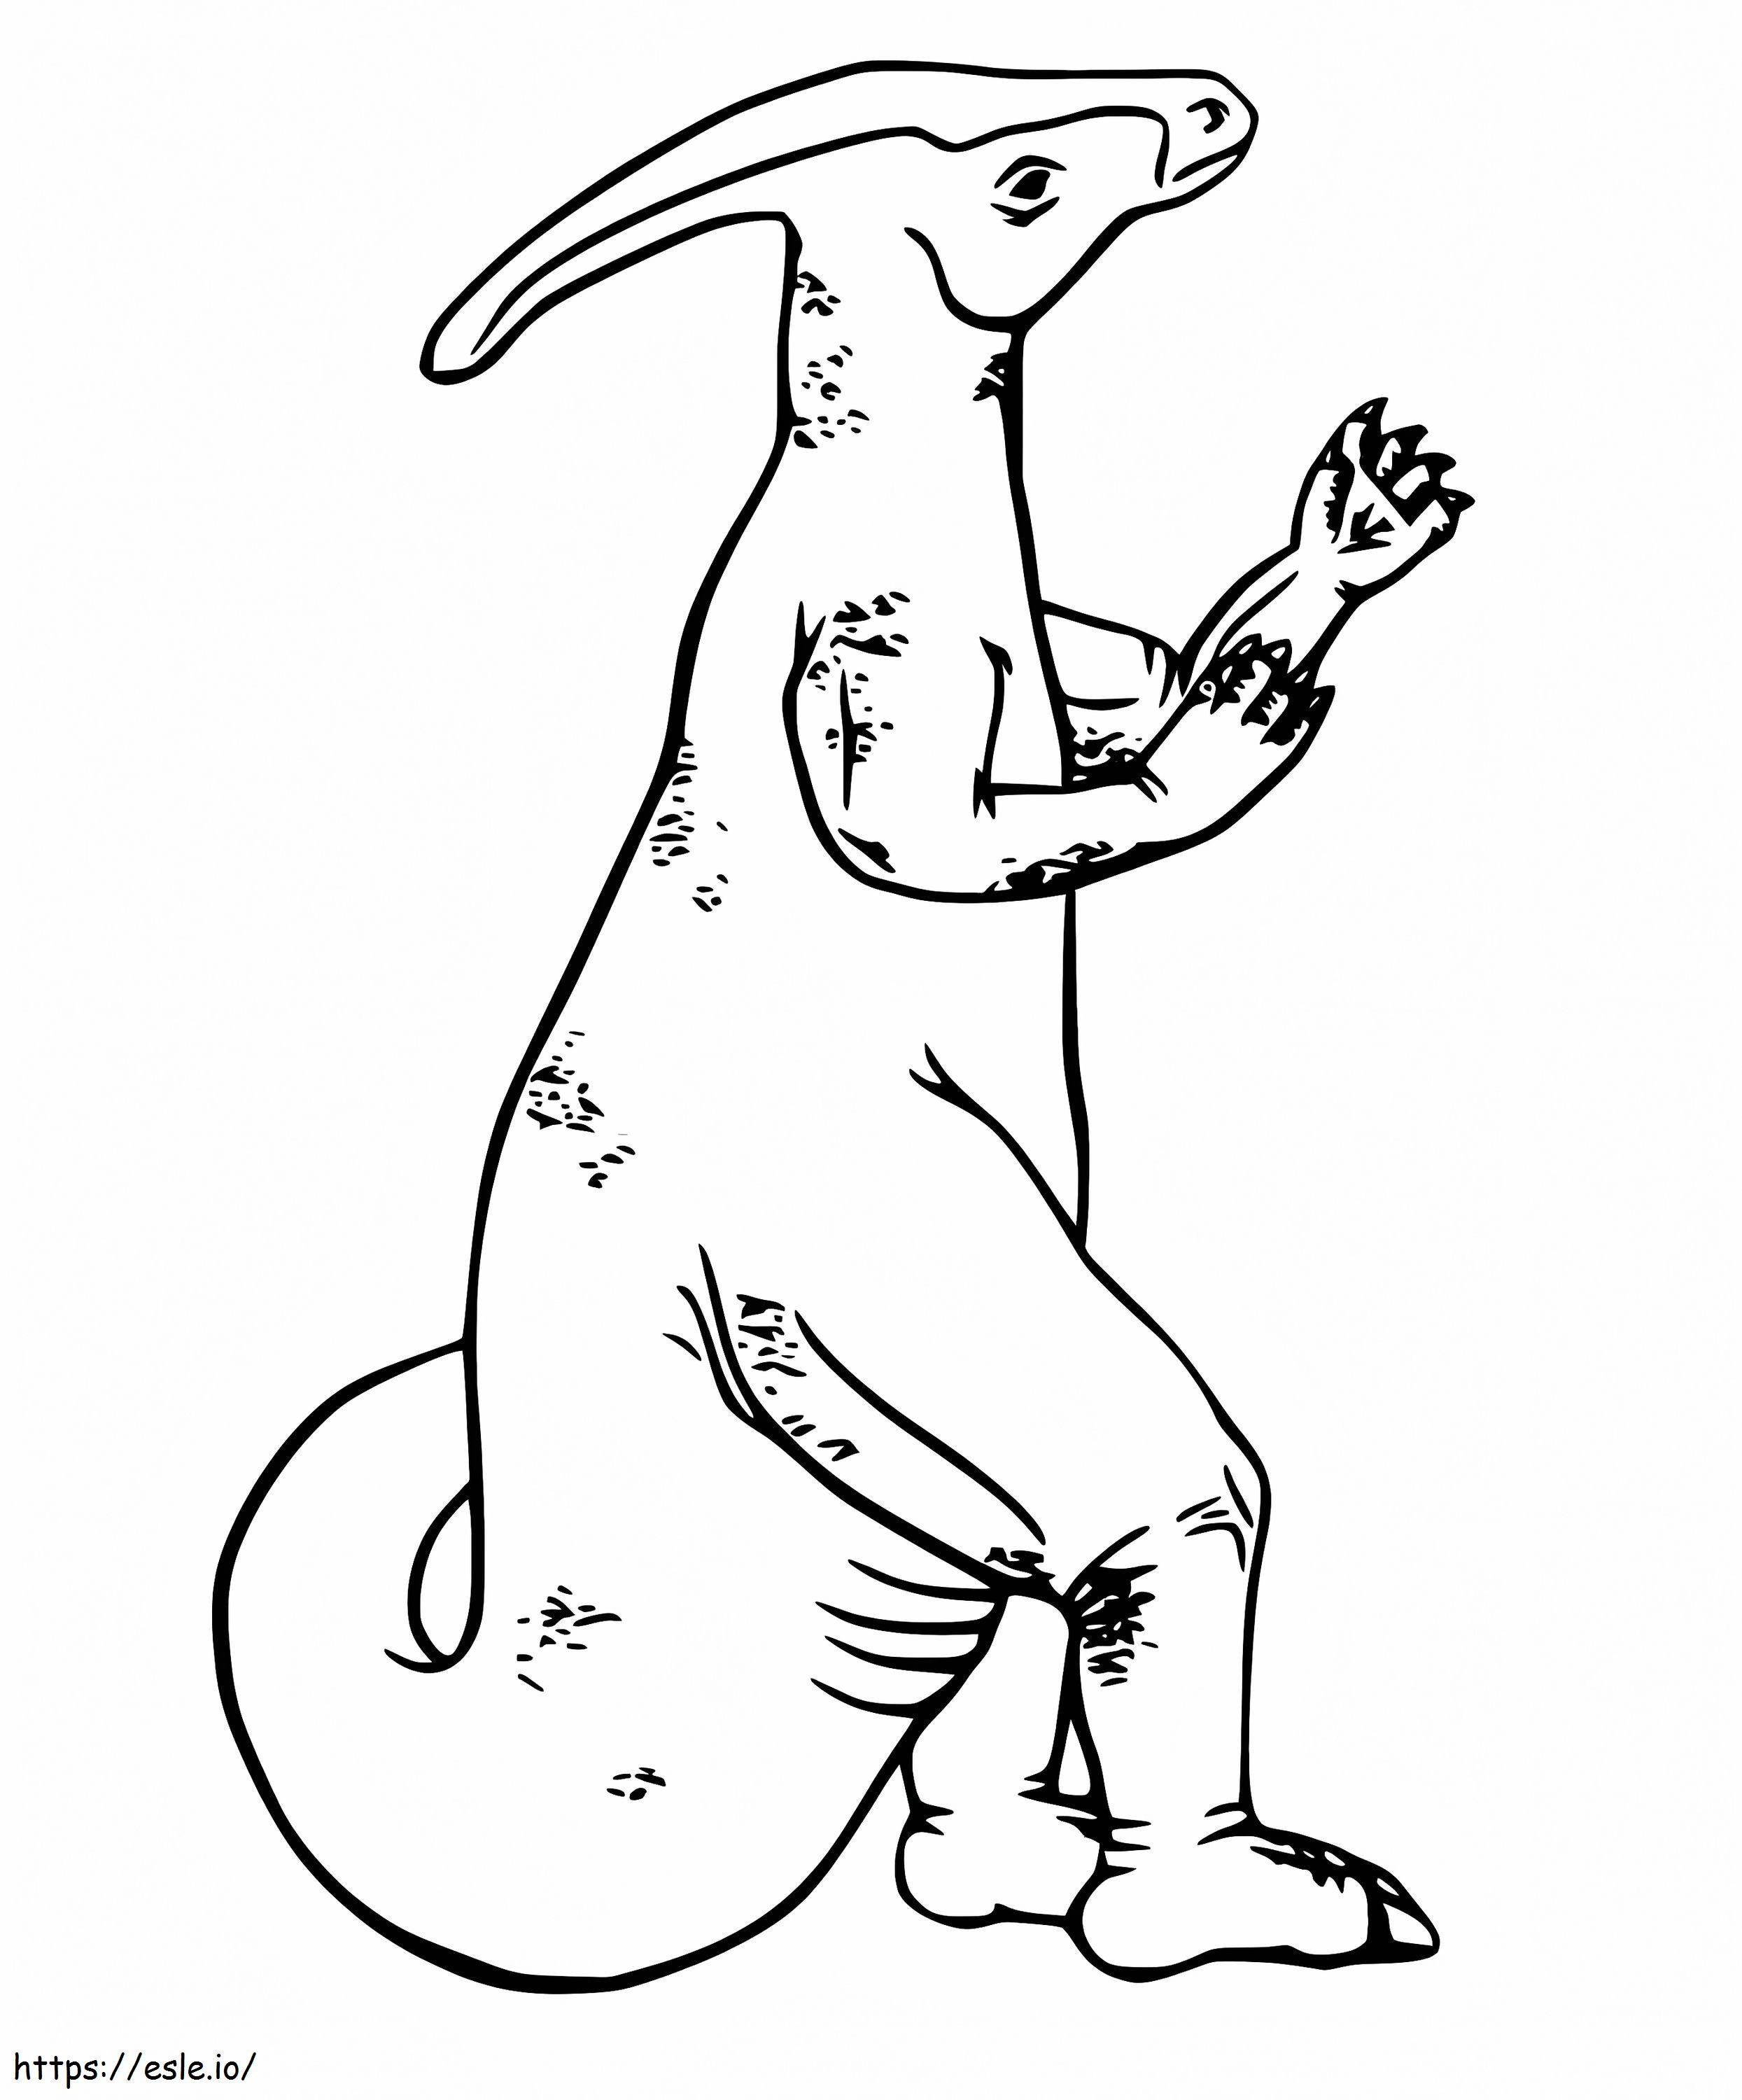 Coloriage Parasaurolophus 7 à imprimer dessin